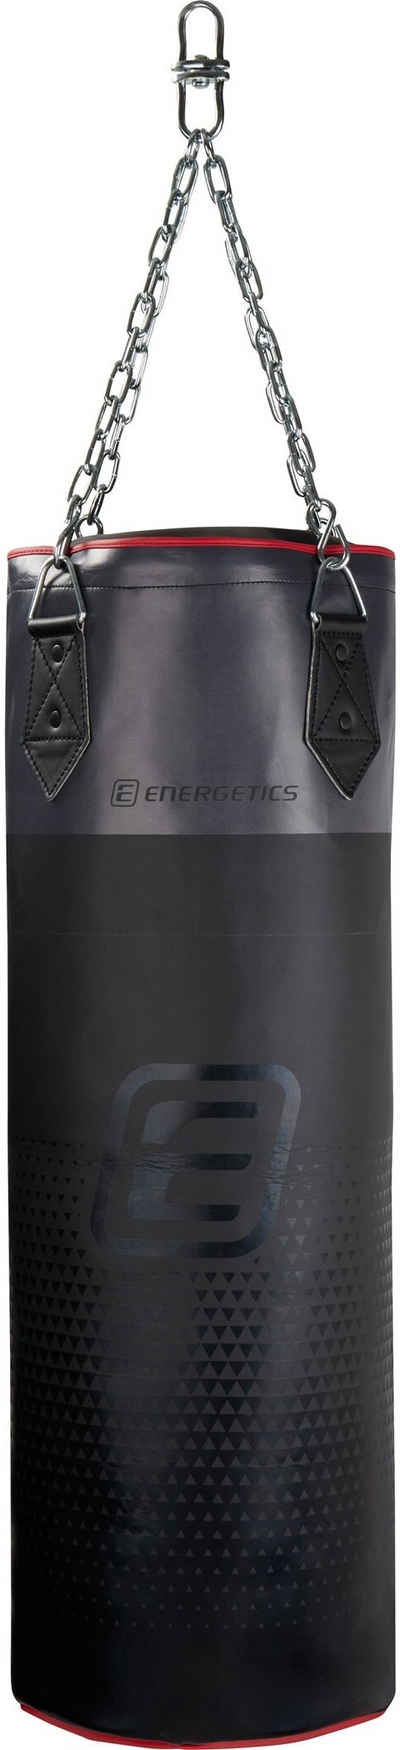 Energetics Boxsack Box-Sack Punching Bag Jpn Cordley 90cm BLACK/ GREY/ RED